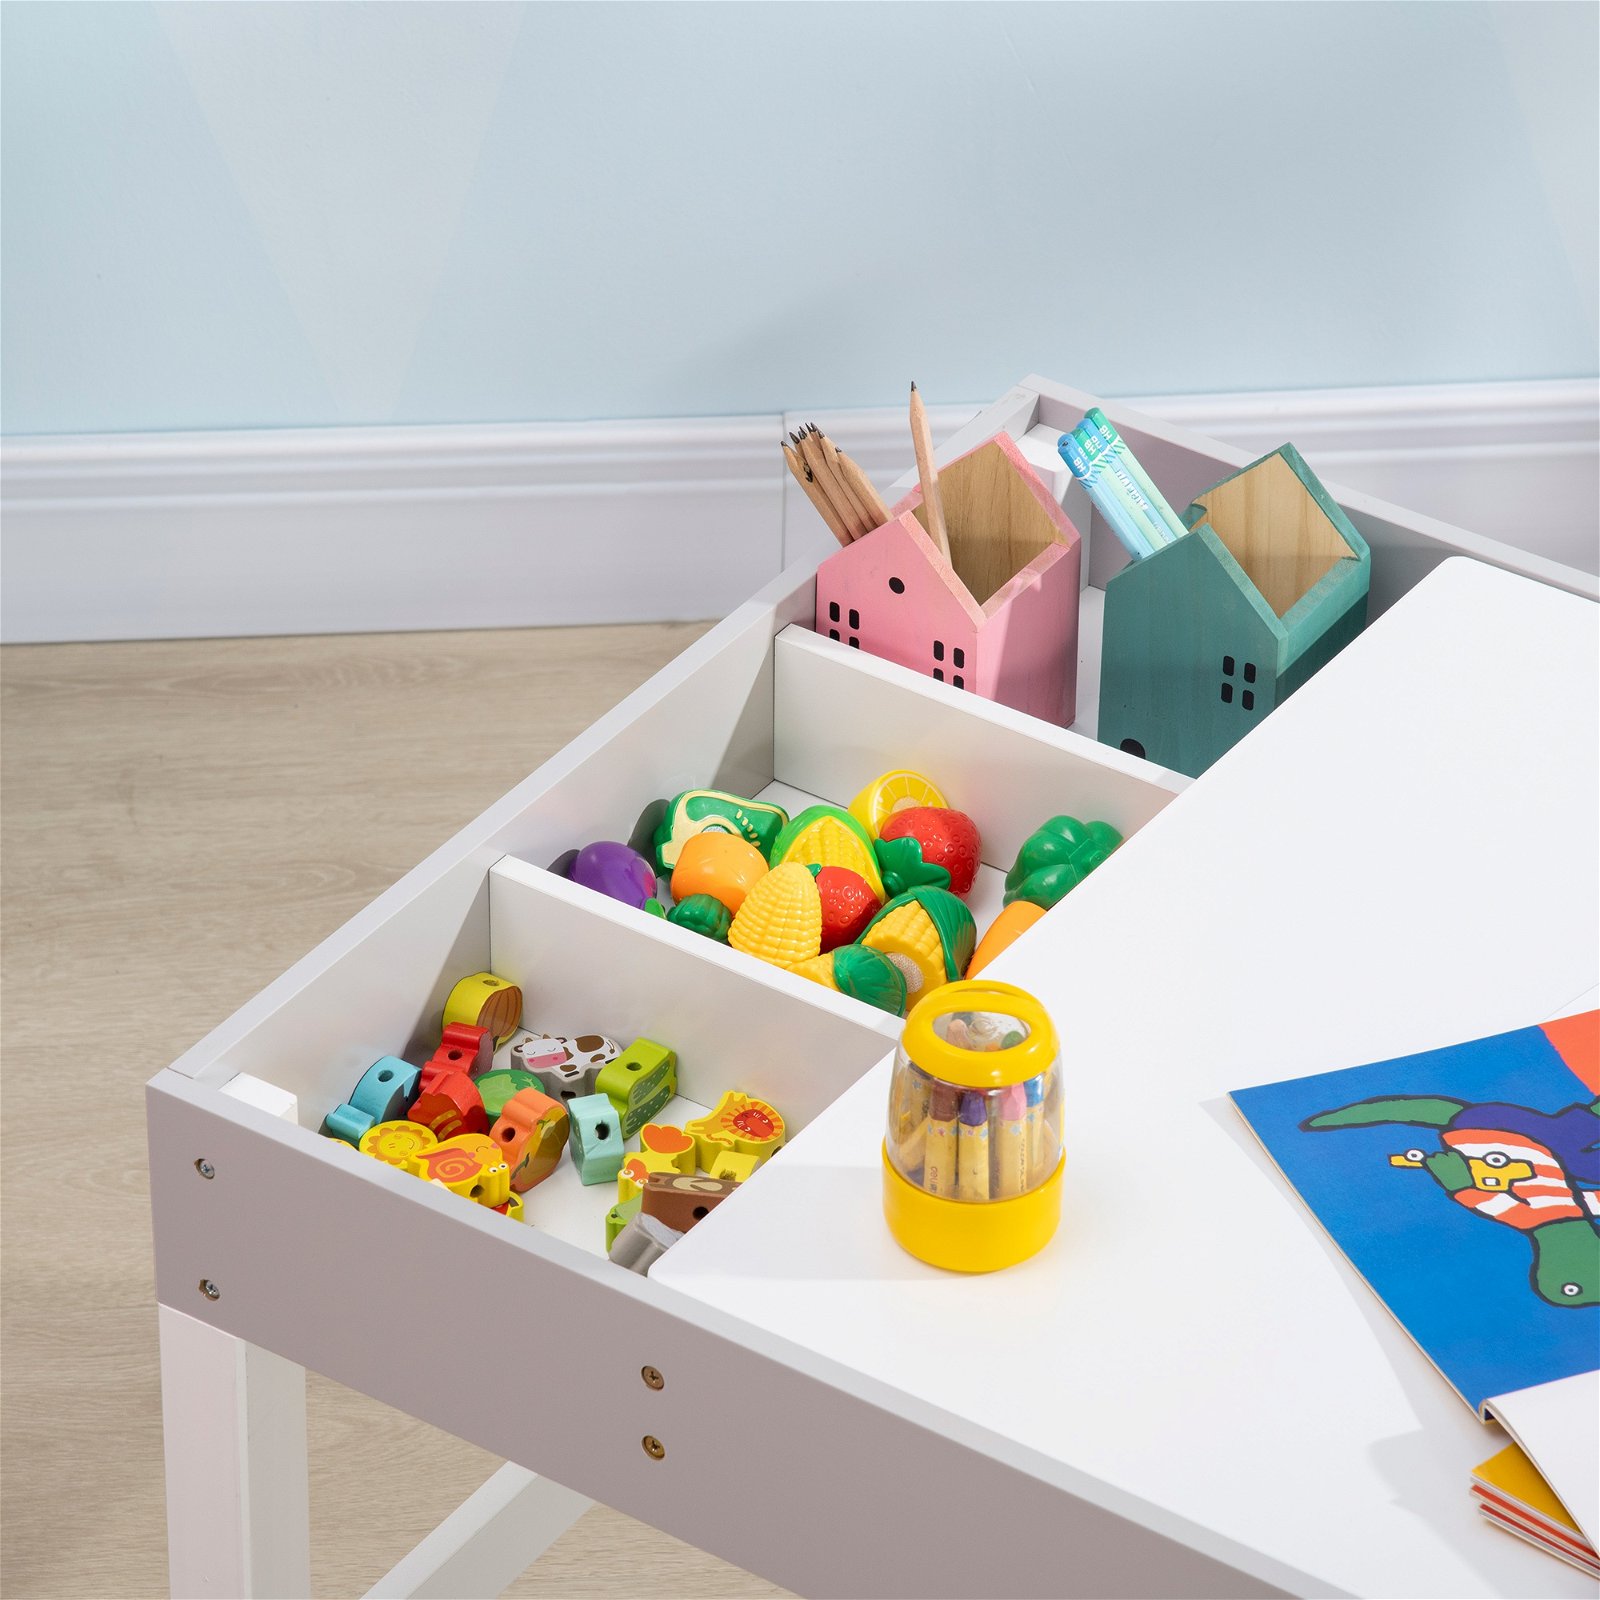 Cadeirinha de Brinquedo Infantil com Blocos de Montar - Wp Connect